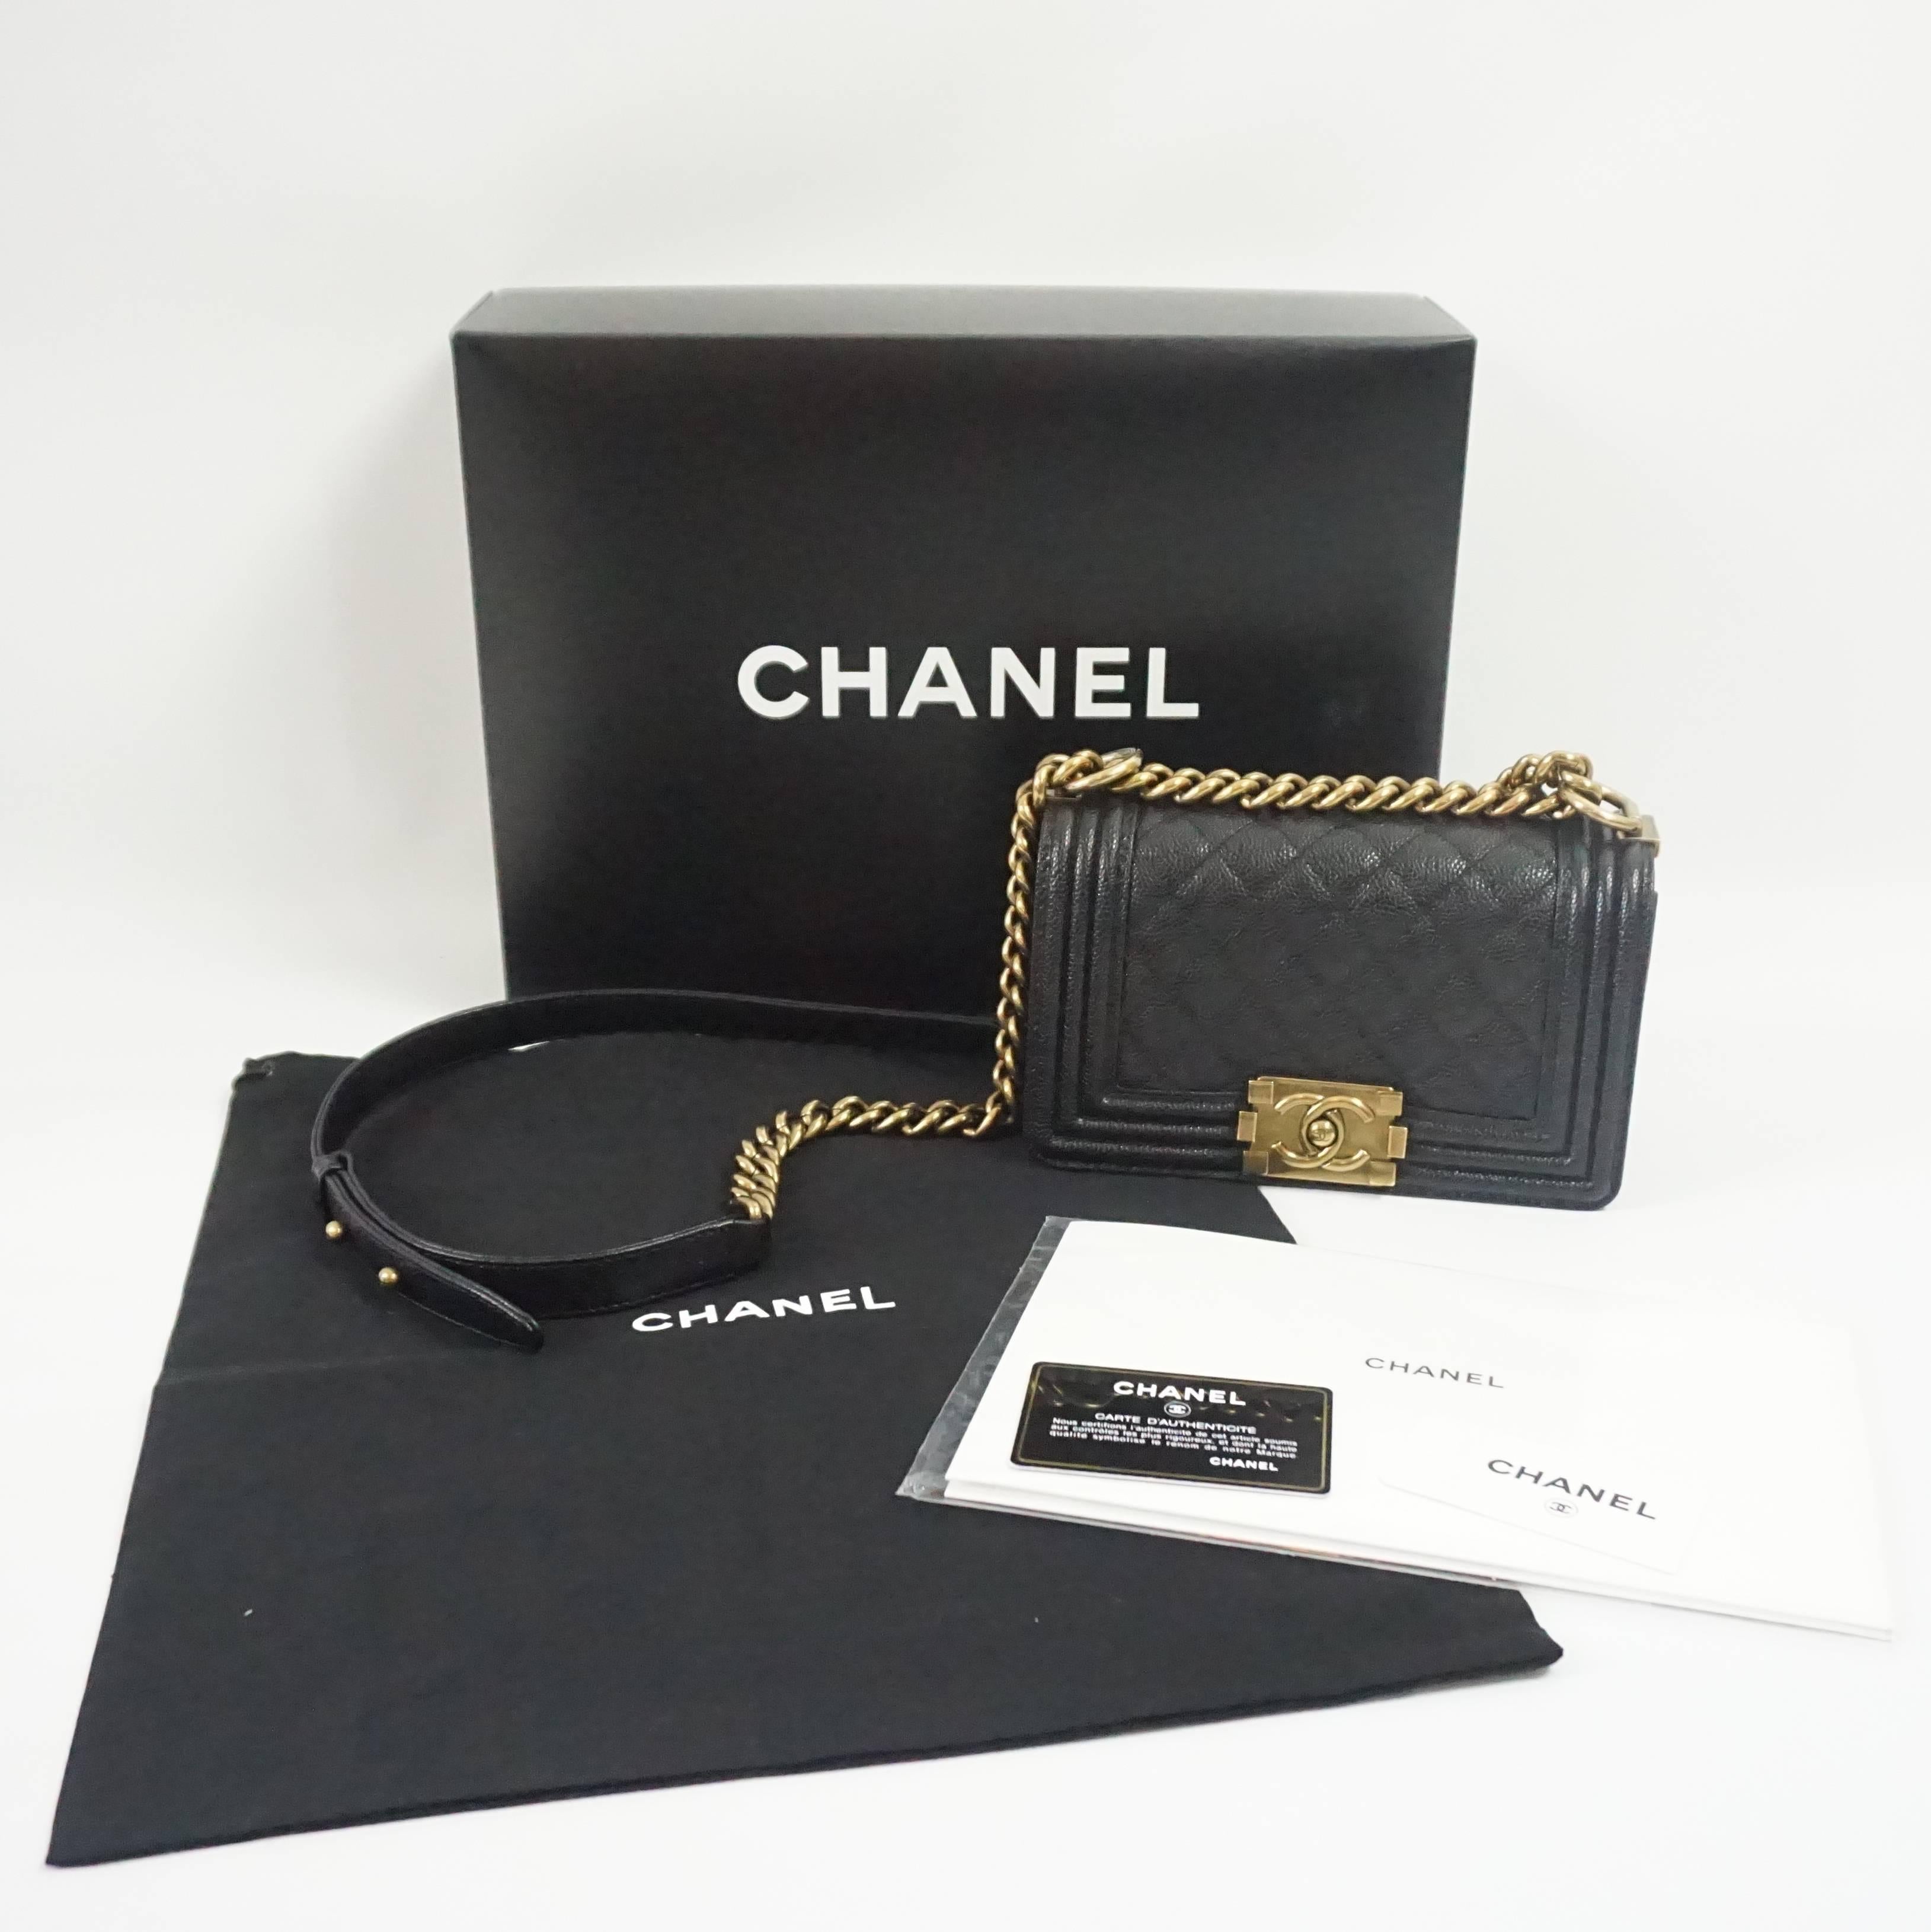 Chanel Black Caviar Small Boy Bag - GHW - 2014 6